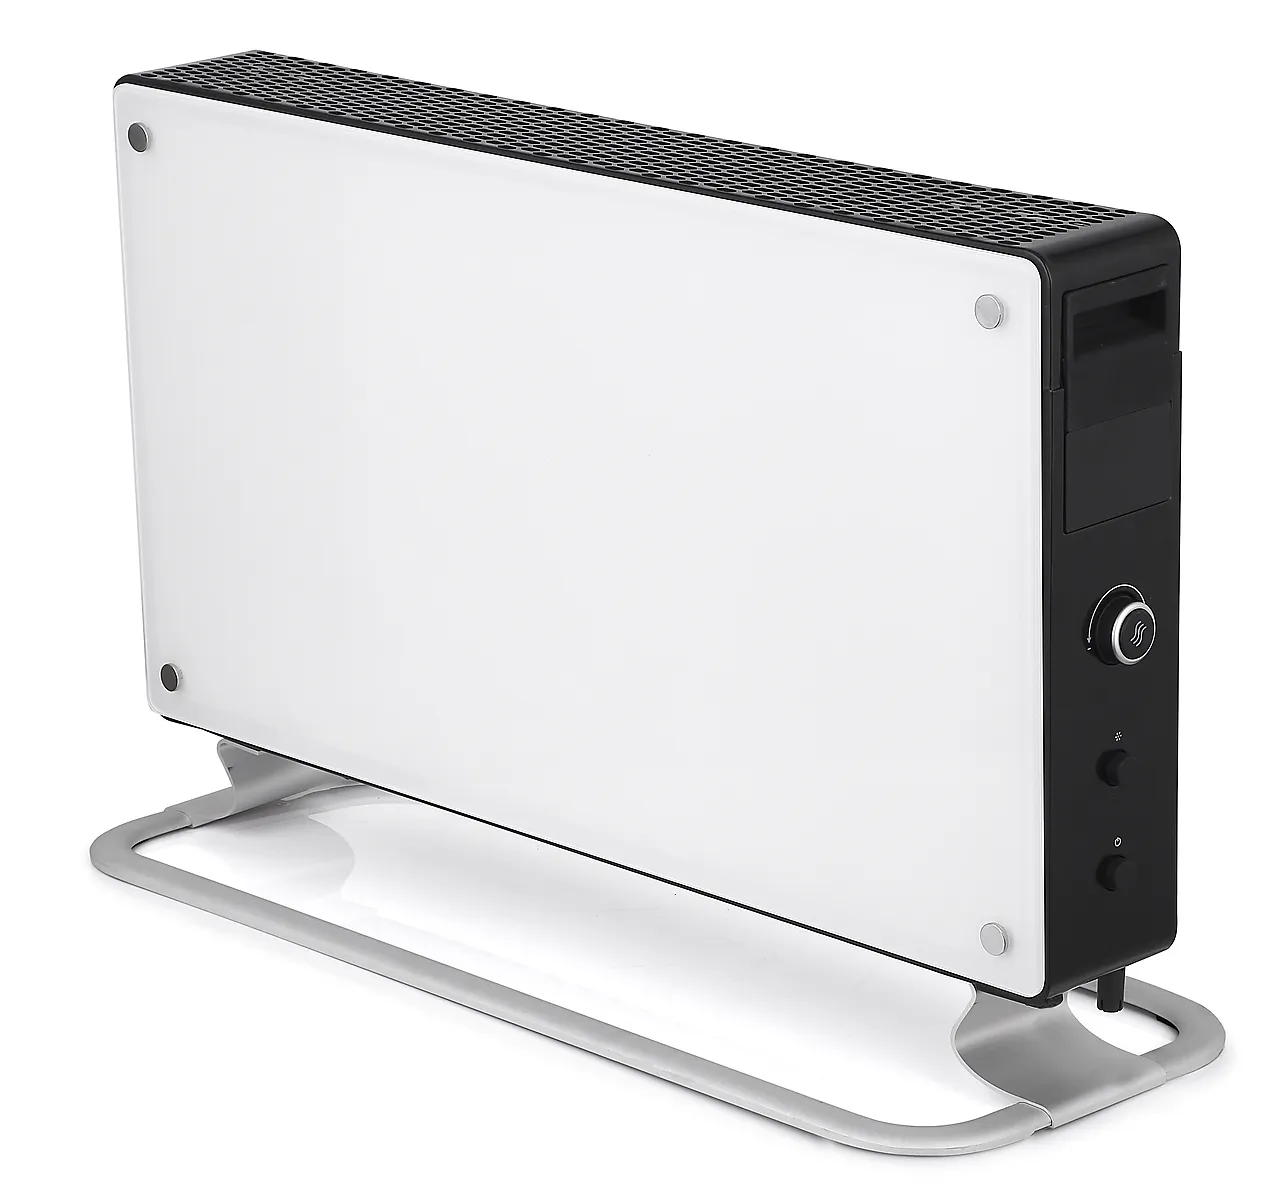 Konvektorovn m/ glassfront 2000 watt elektronisk termostat null - null - 2 - Miniatyr